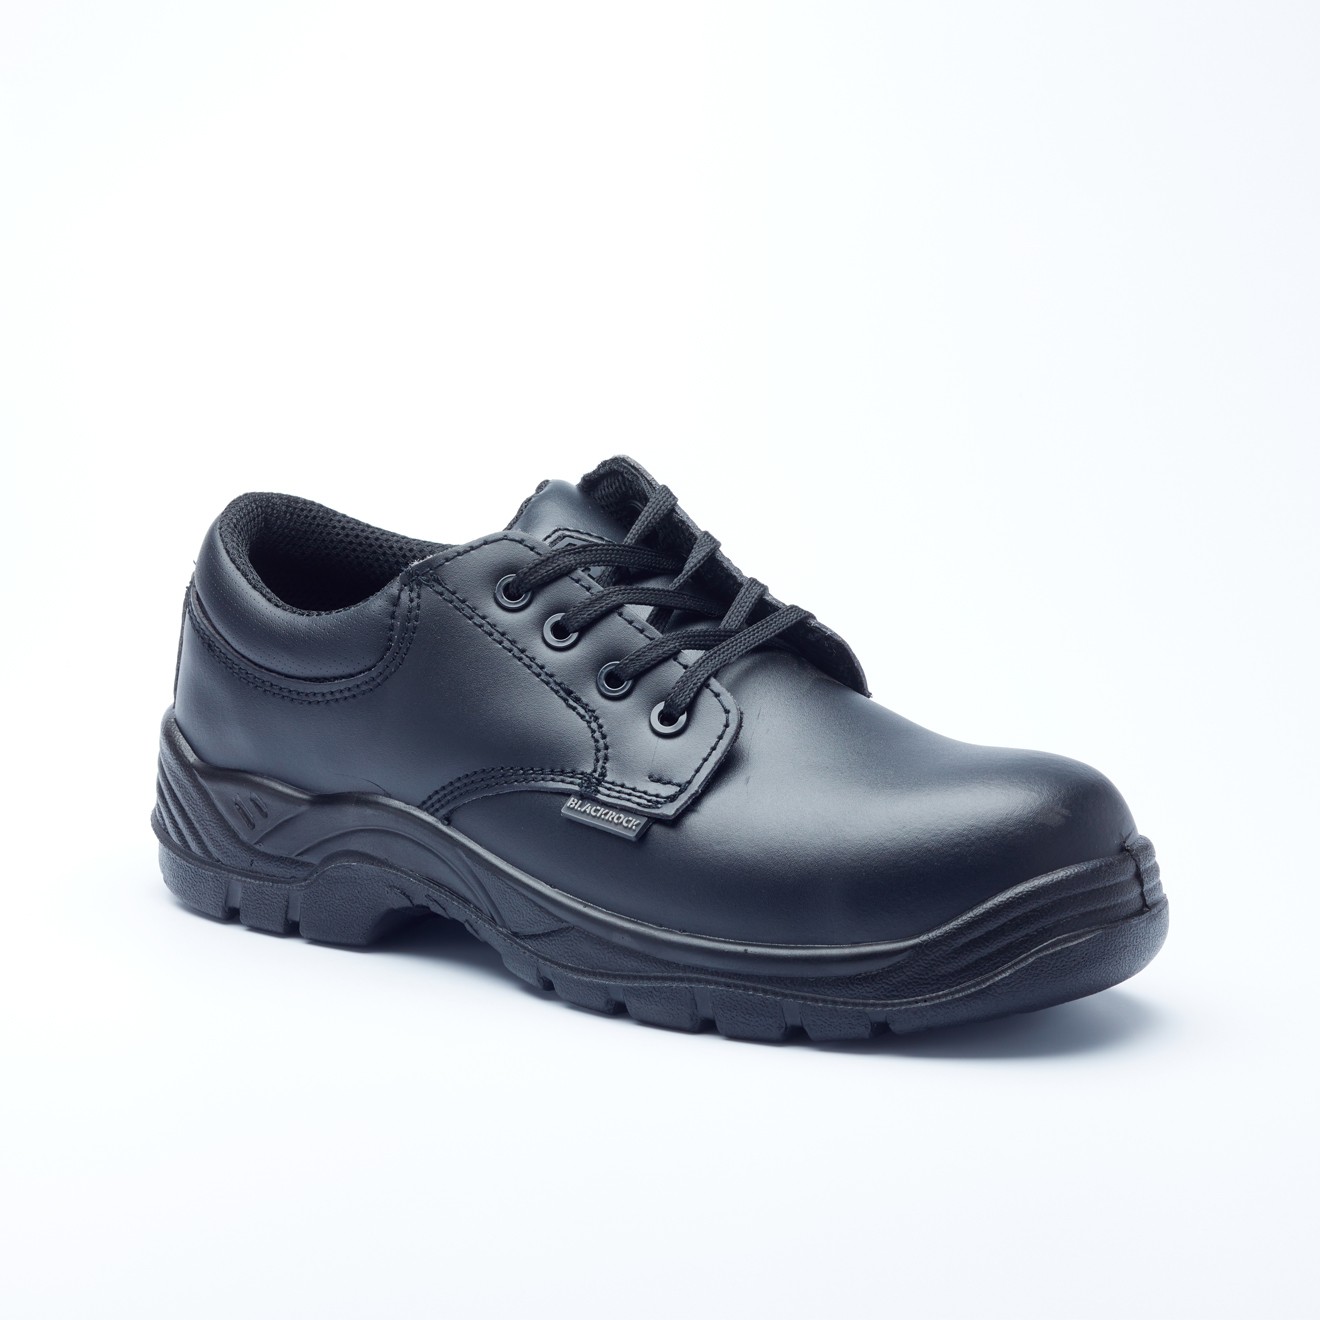 Blackrock Sf43 Chaussures de sécurité Homme 5 UK - 38 EU Noir Black